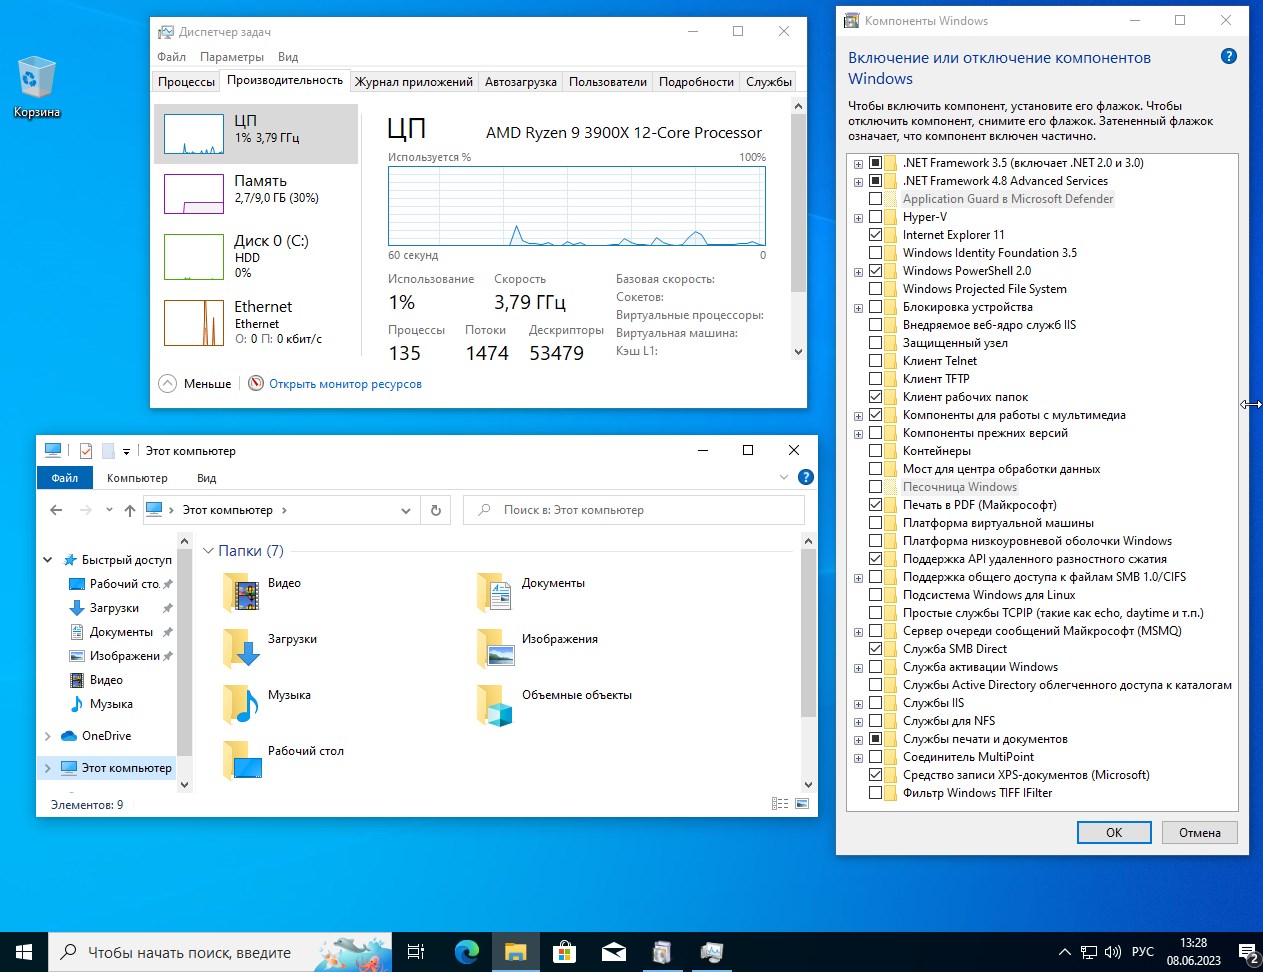 Скачать Windows 10 x64 Enterprise Чистая базовая сборка 22H2 без торрент бесплатно 